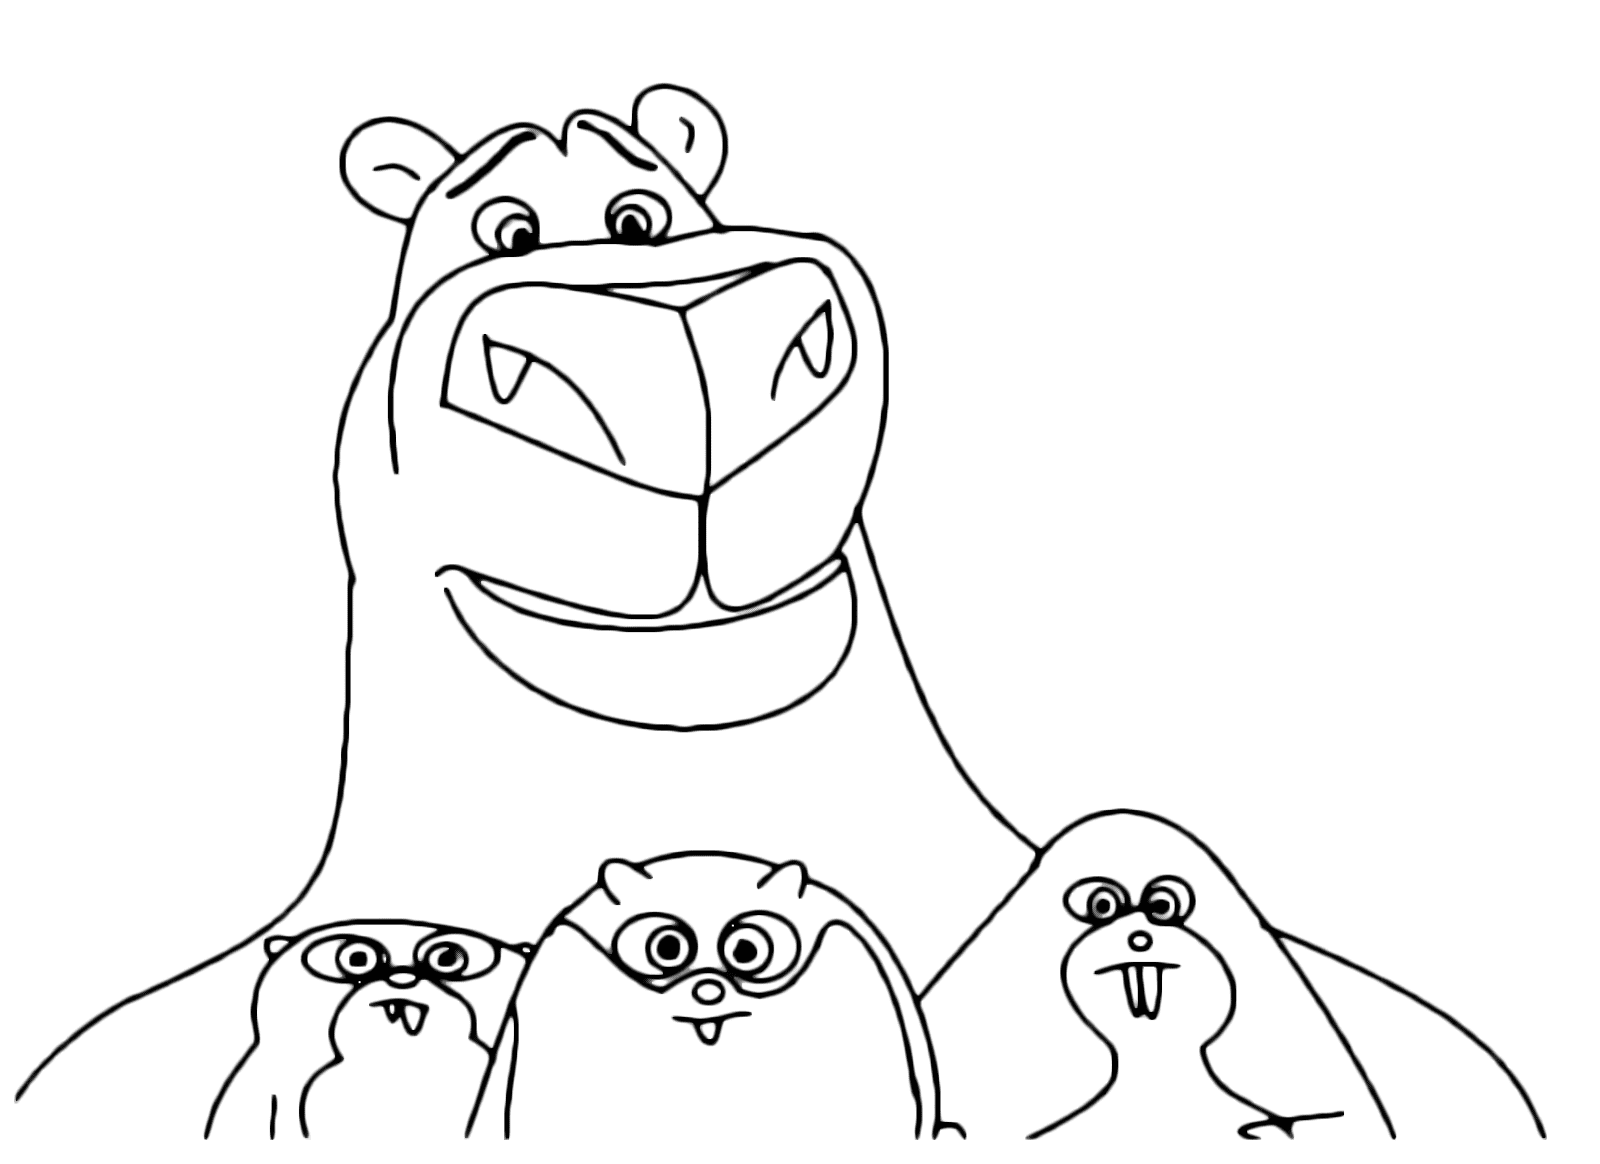 Norm de ijsbeer en zijn vrienden uit Norm van het Noorden